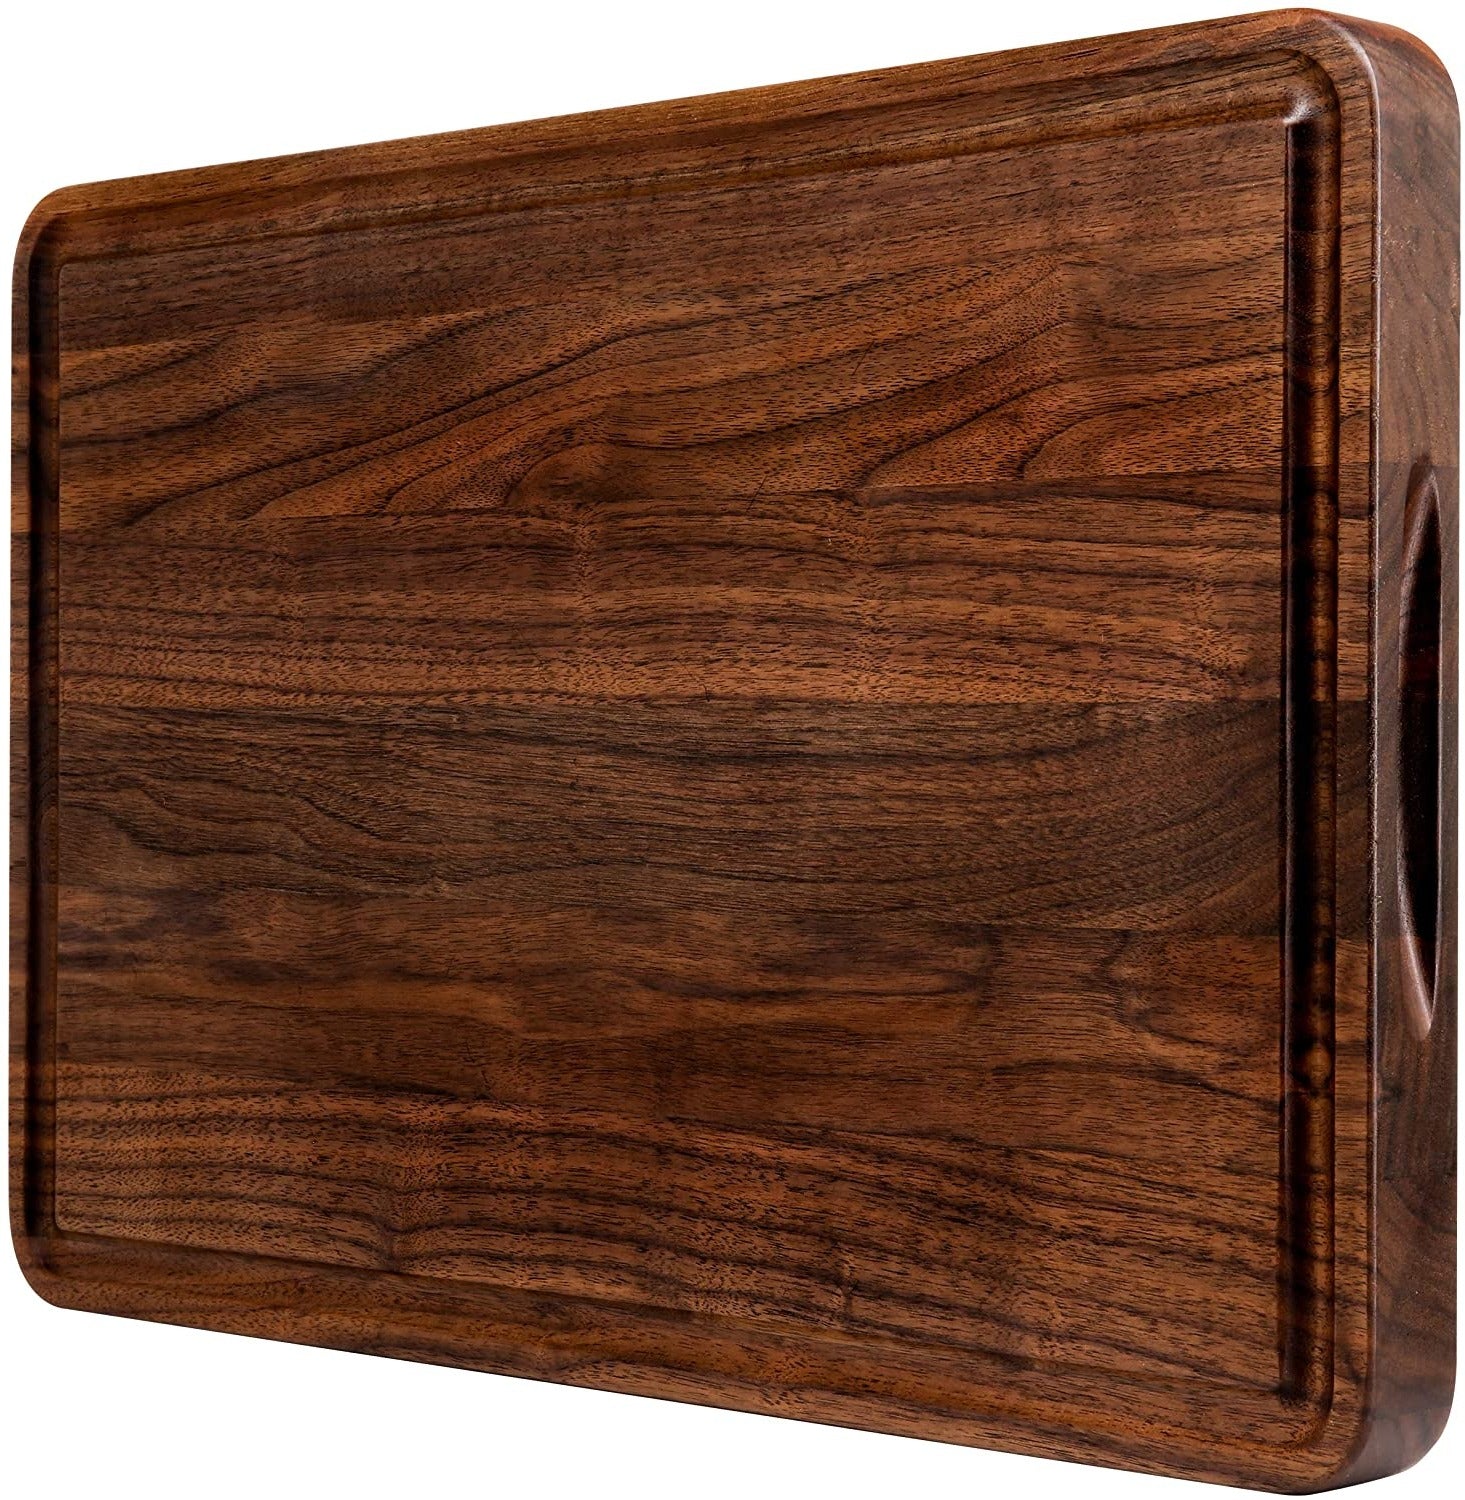 http://www.novobam.com/cdn/shop/products/us-walnut-wood-cutting-boards-507012.jpg?v=1700933038